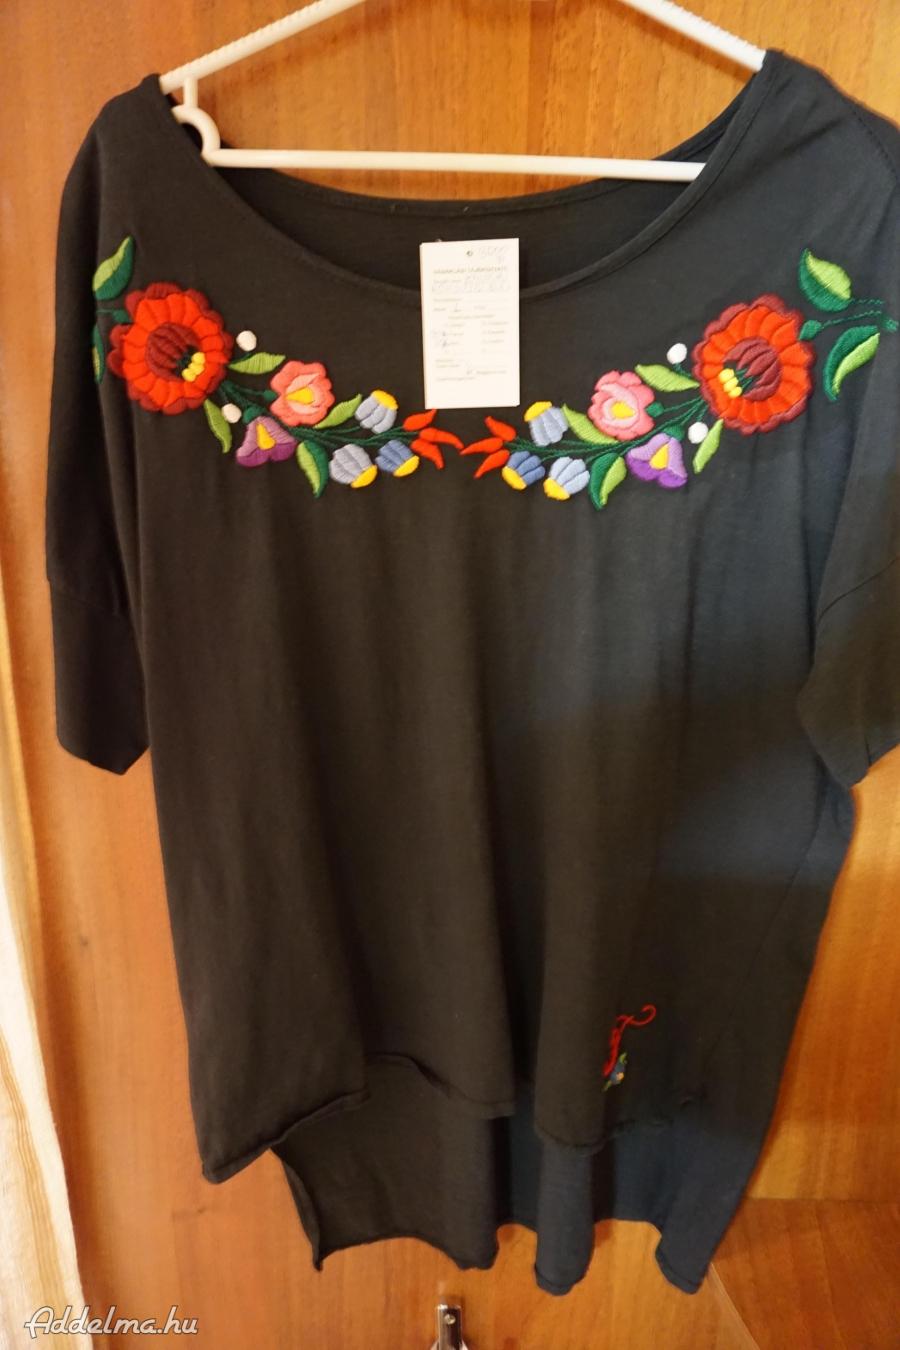 XL-es fekete női blúz színes kalocsai hímzéssel eladó